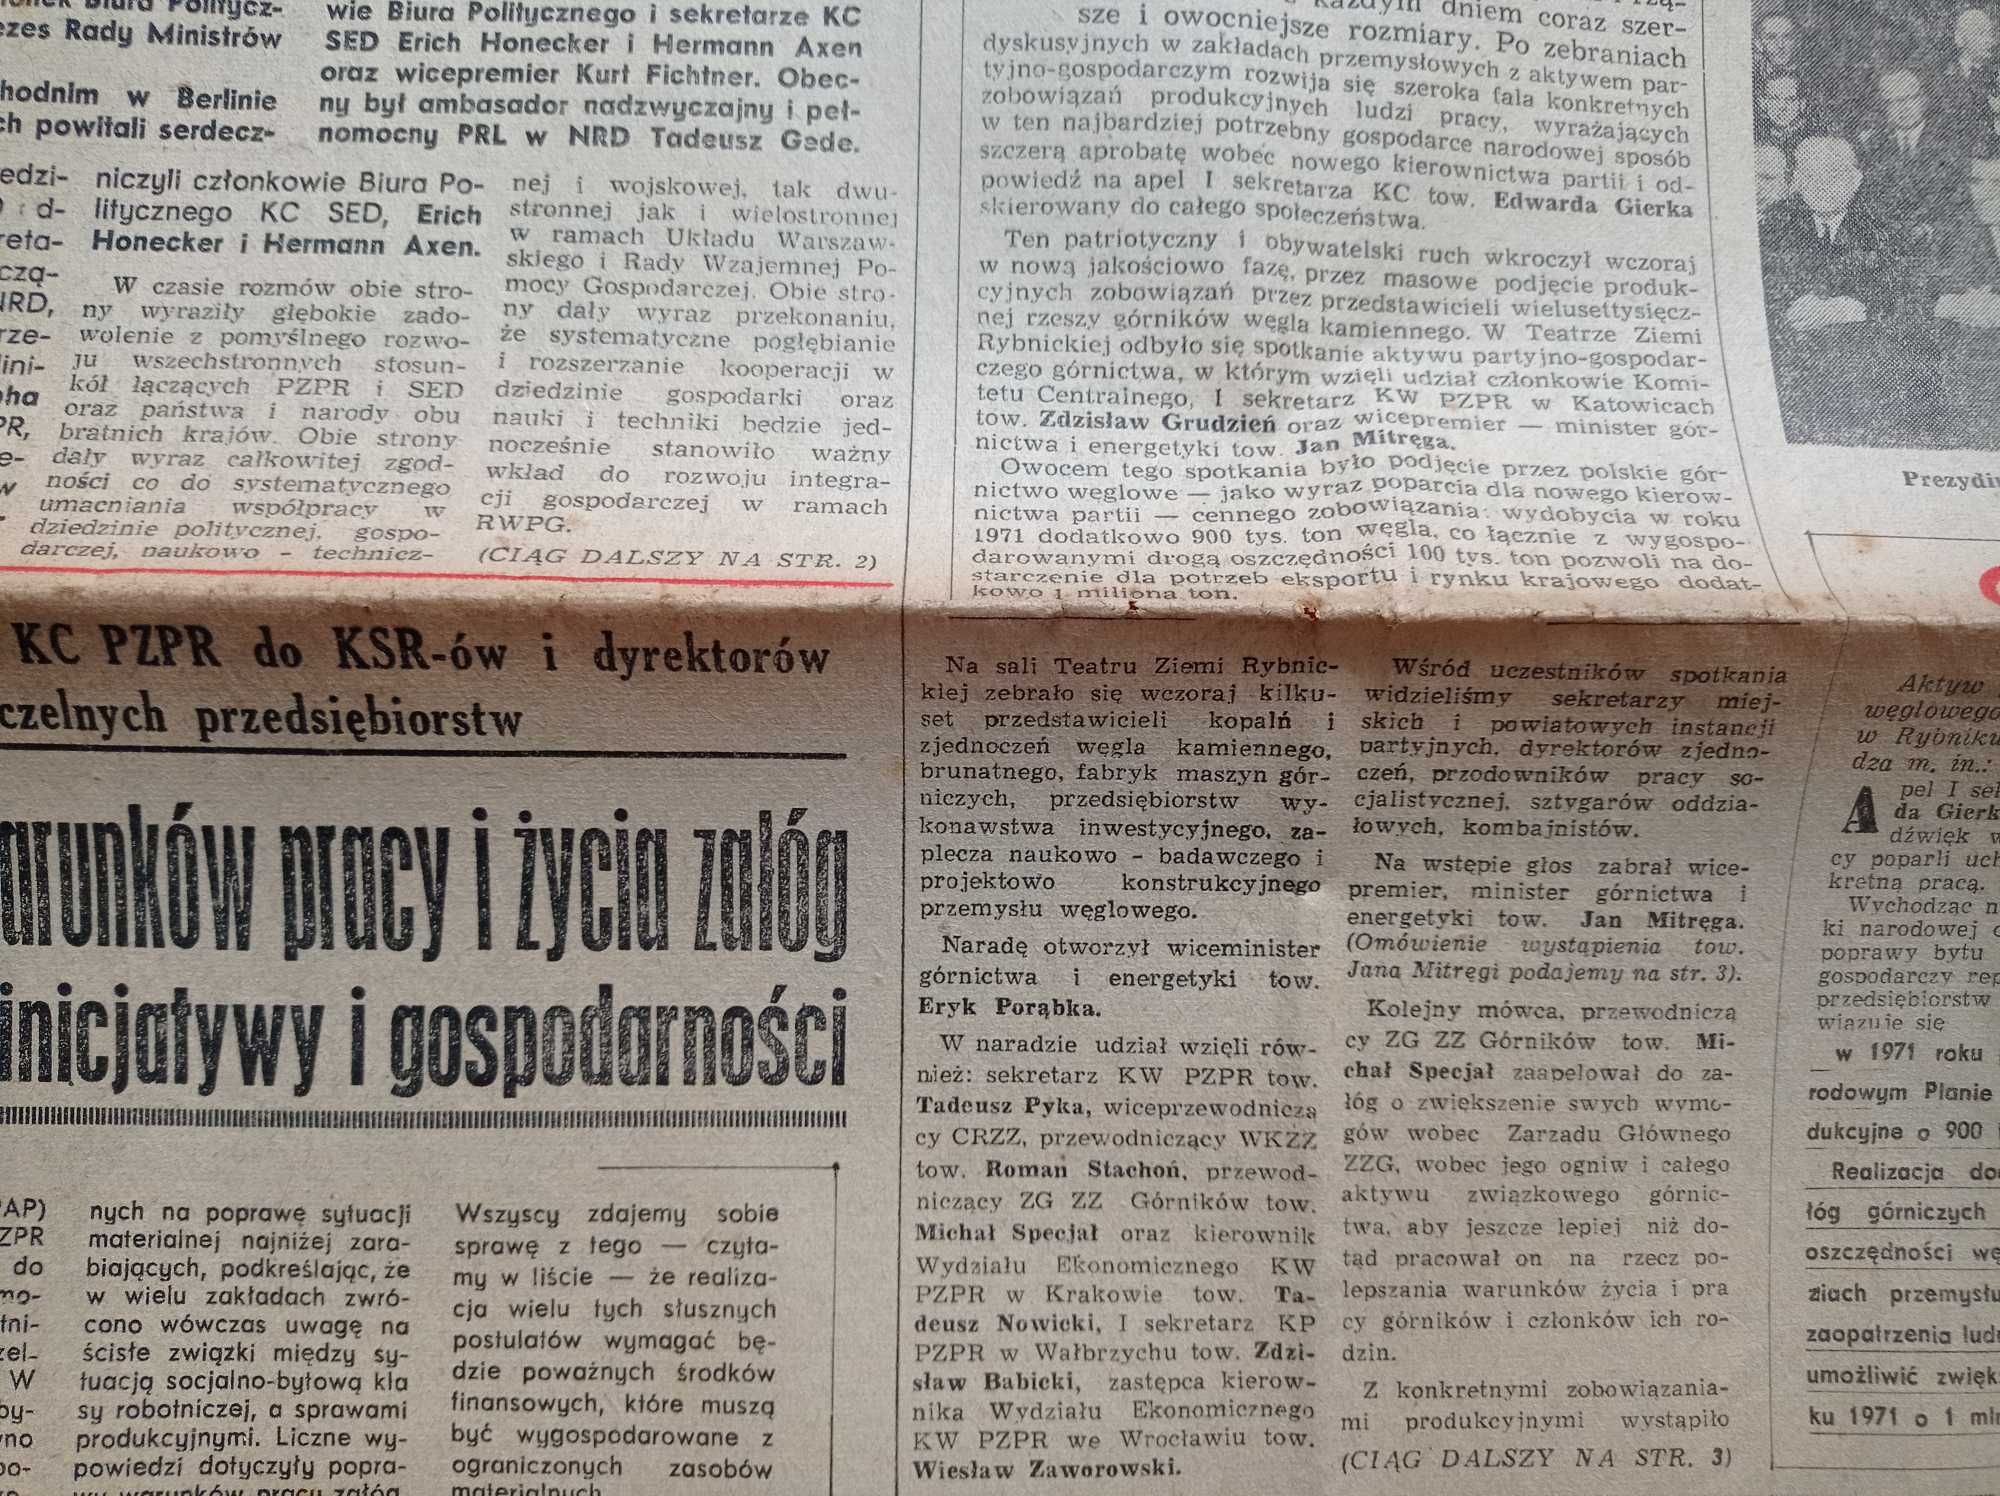 Trybuna robotnicza 9 / 1971